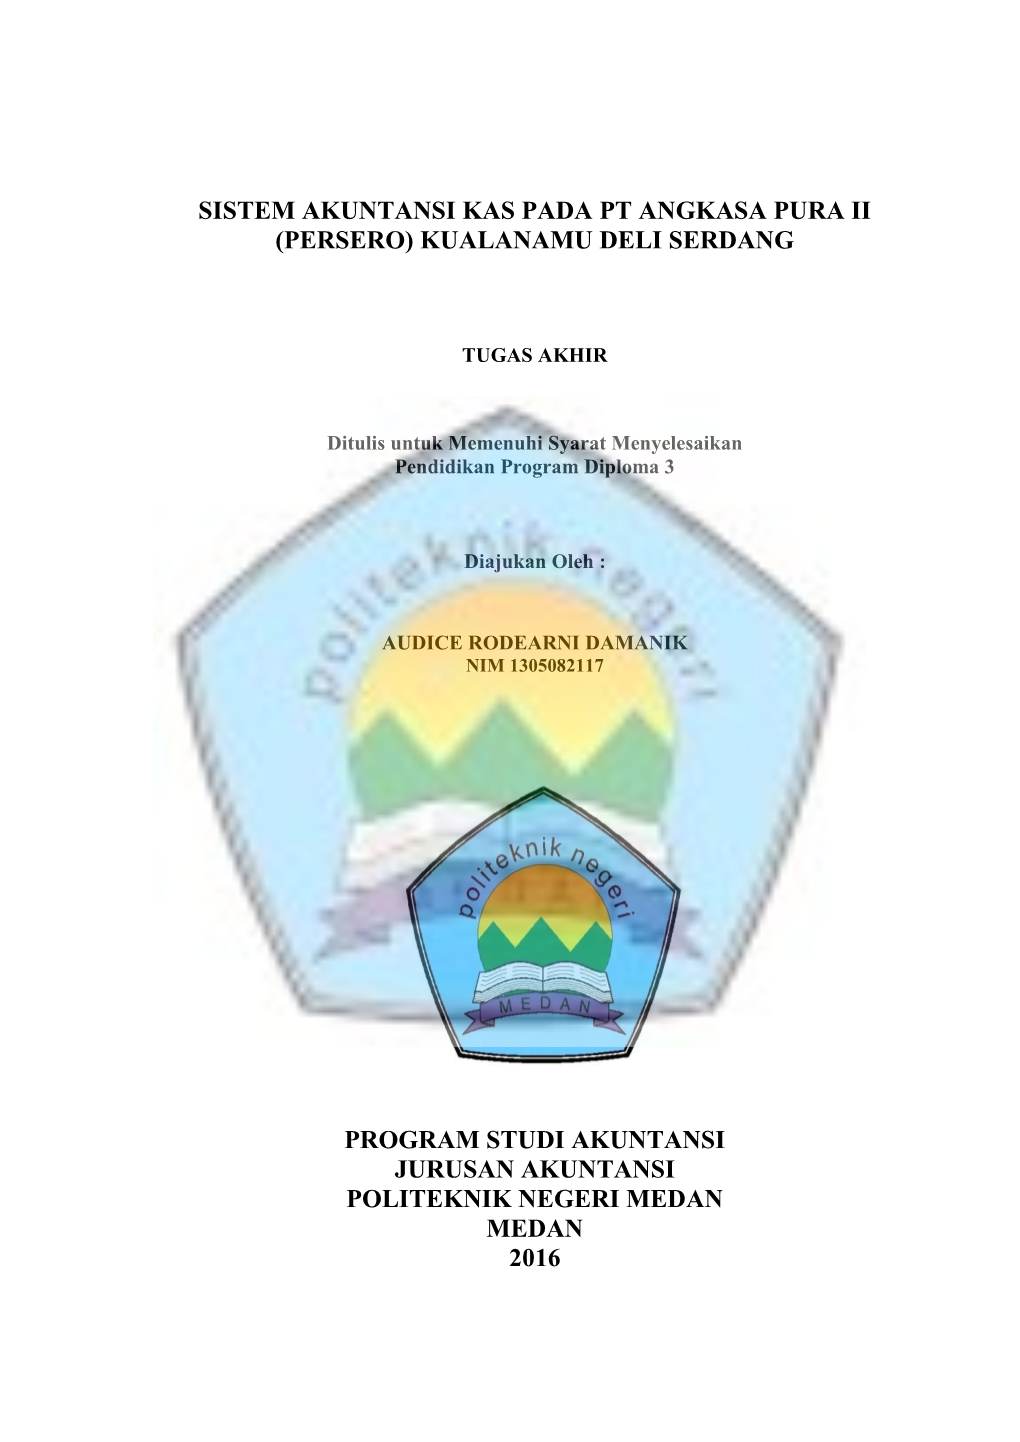 Sistem Akuntansi Kas Pada Pt Angkasa Pura Ii (Persero) Kualanamu Deli Serdang